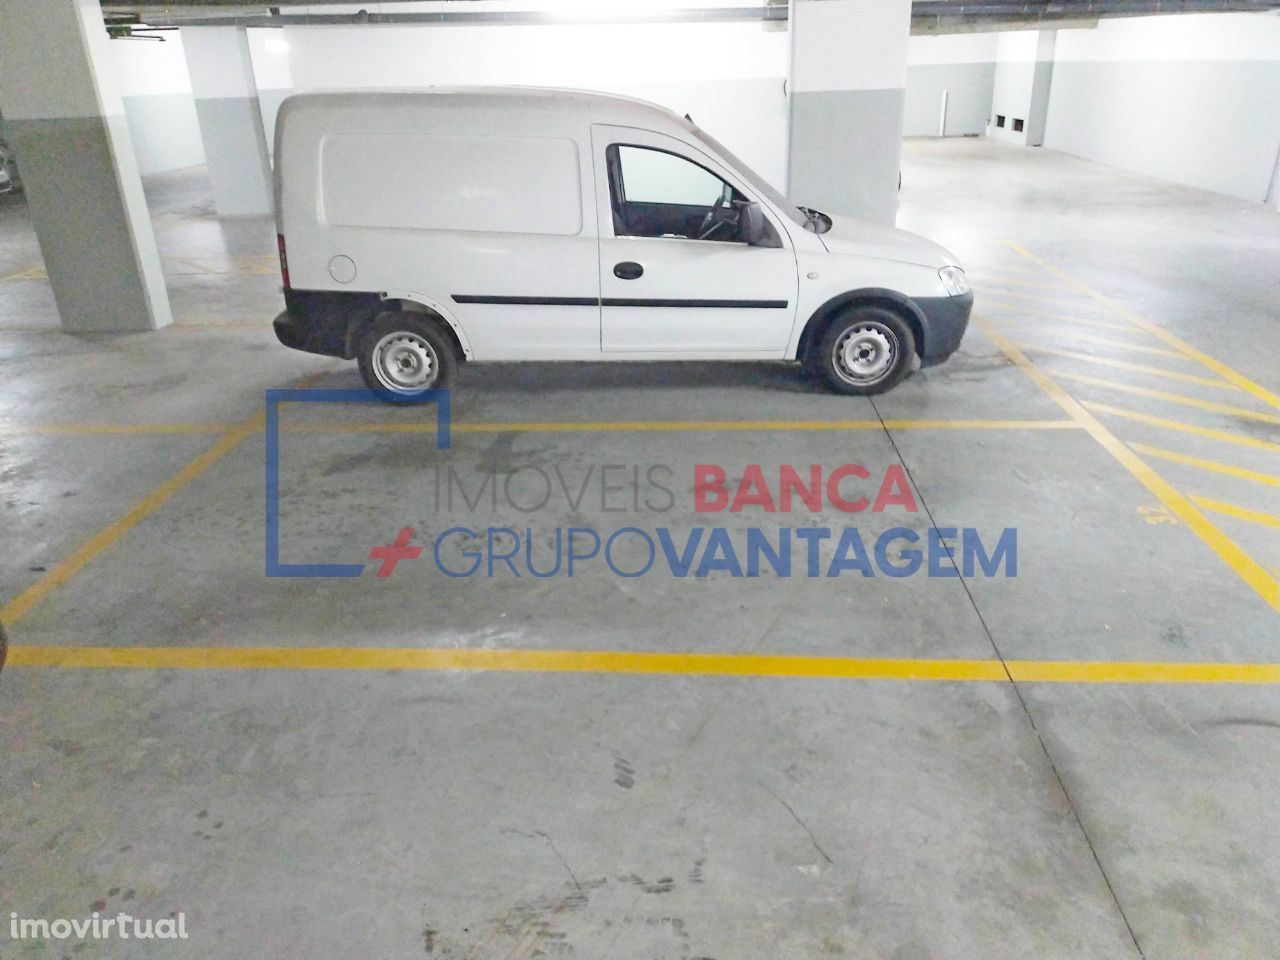 Lugar de garagem no Porto